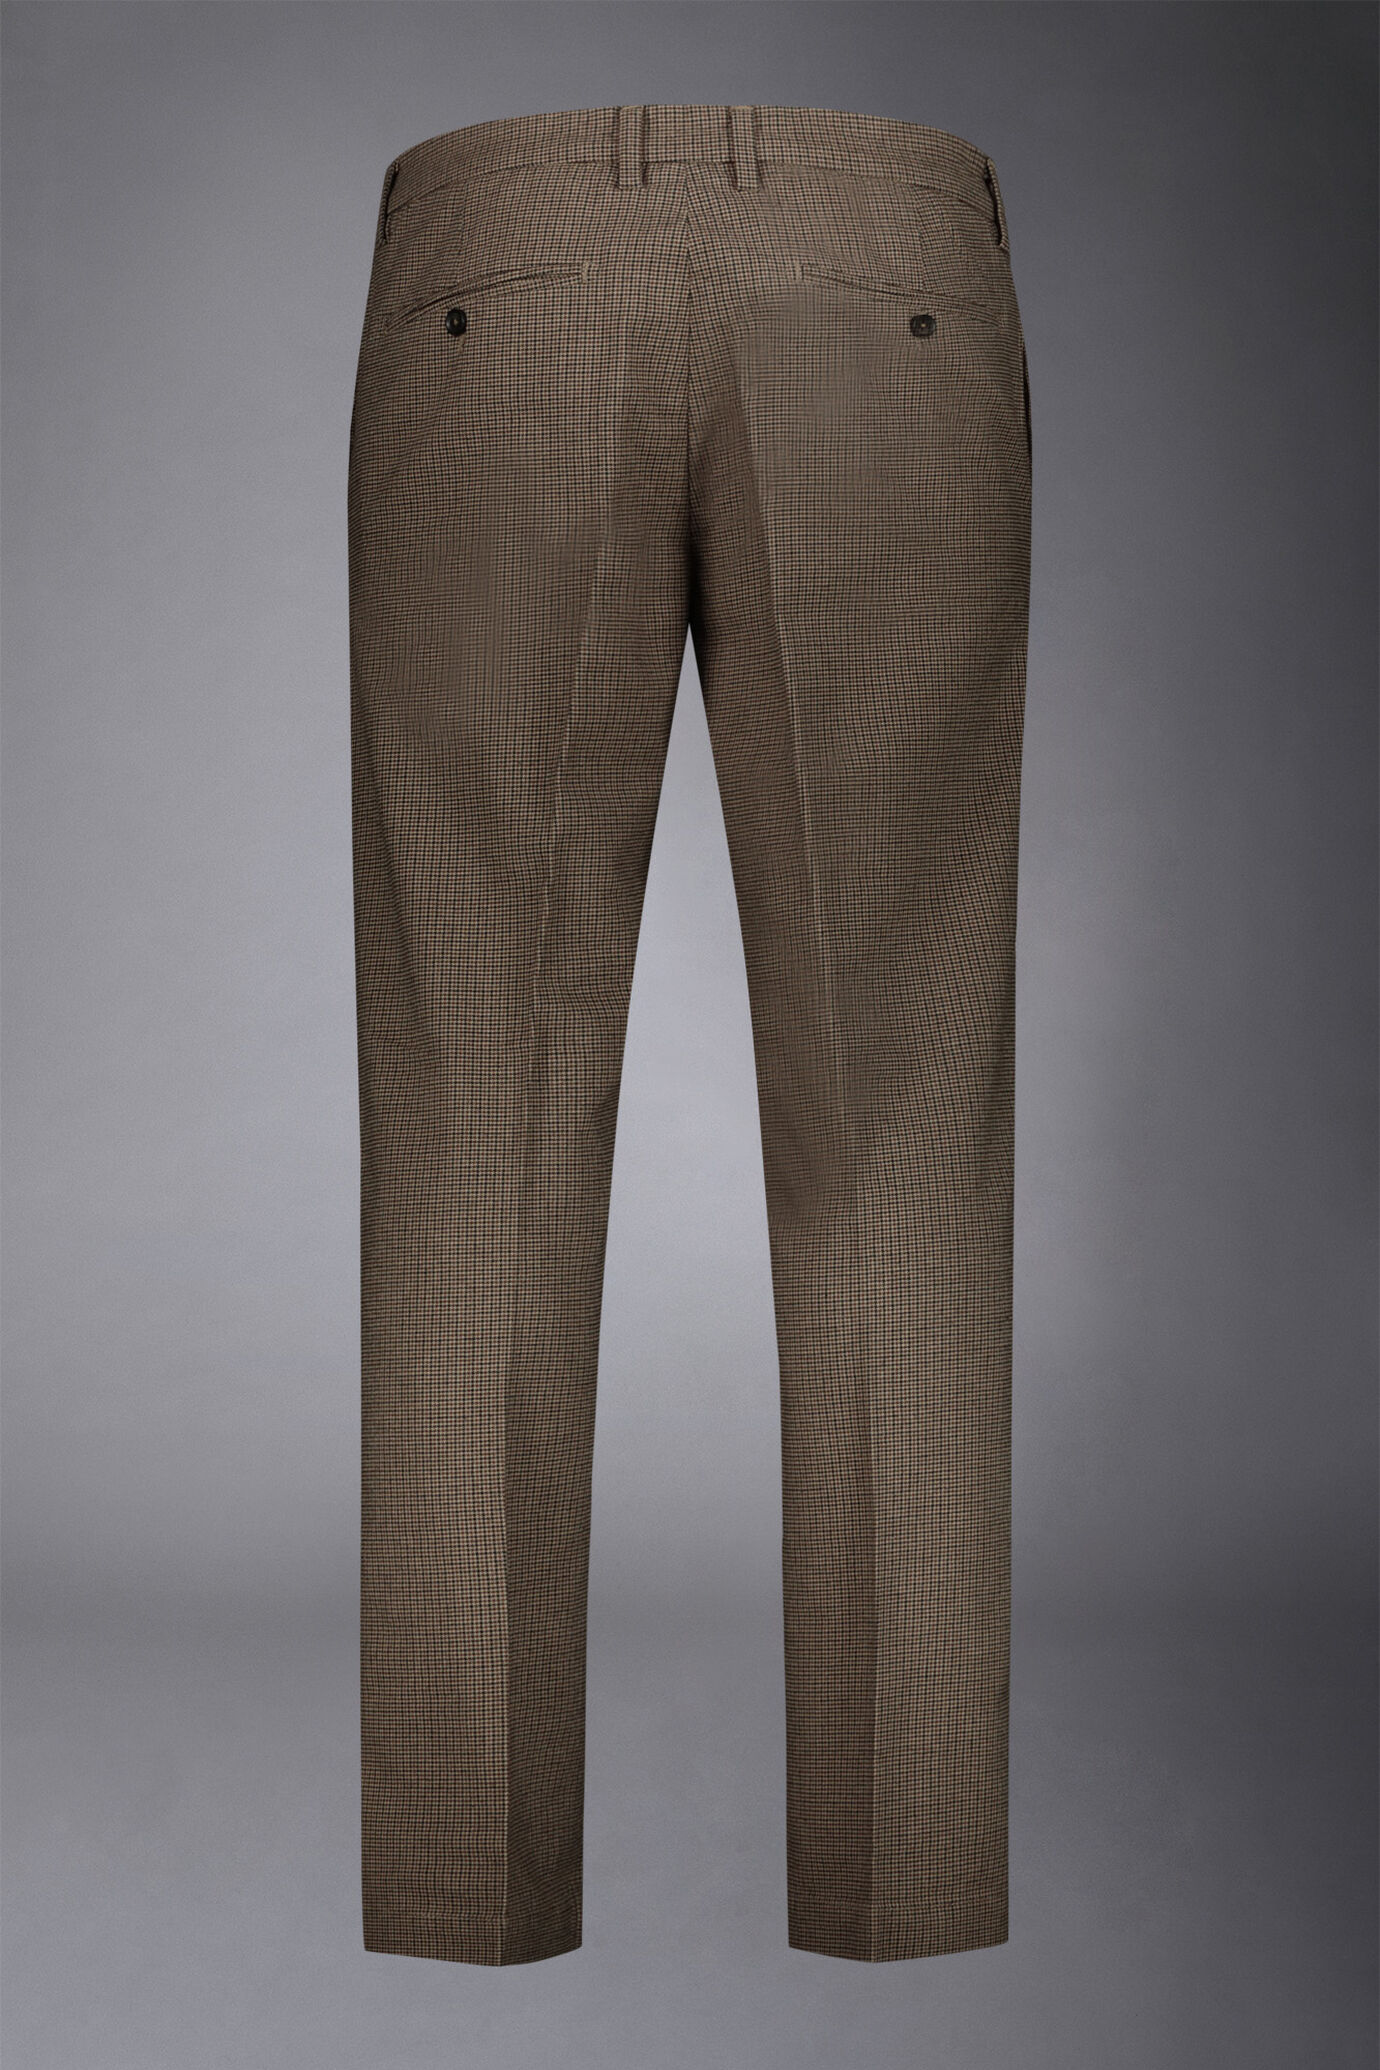 Pantalone chino uomo tessuto in cotone mano lana pied de poule regular fit image number 5